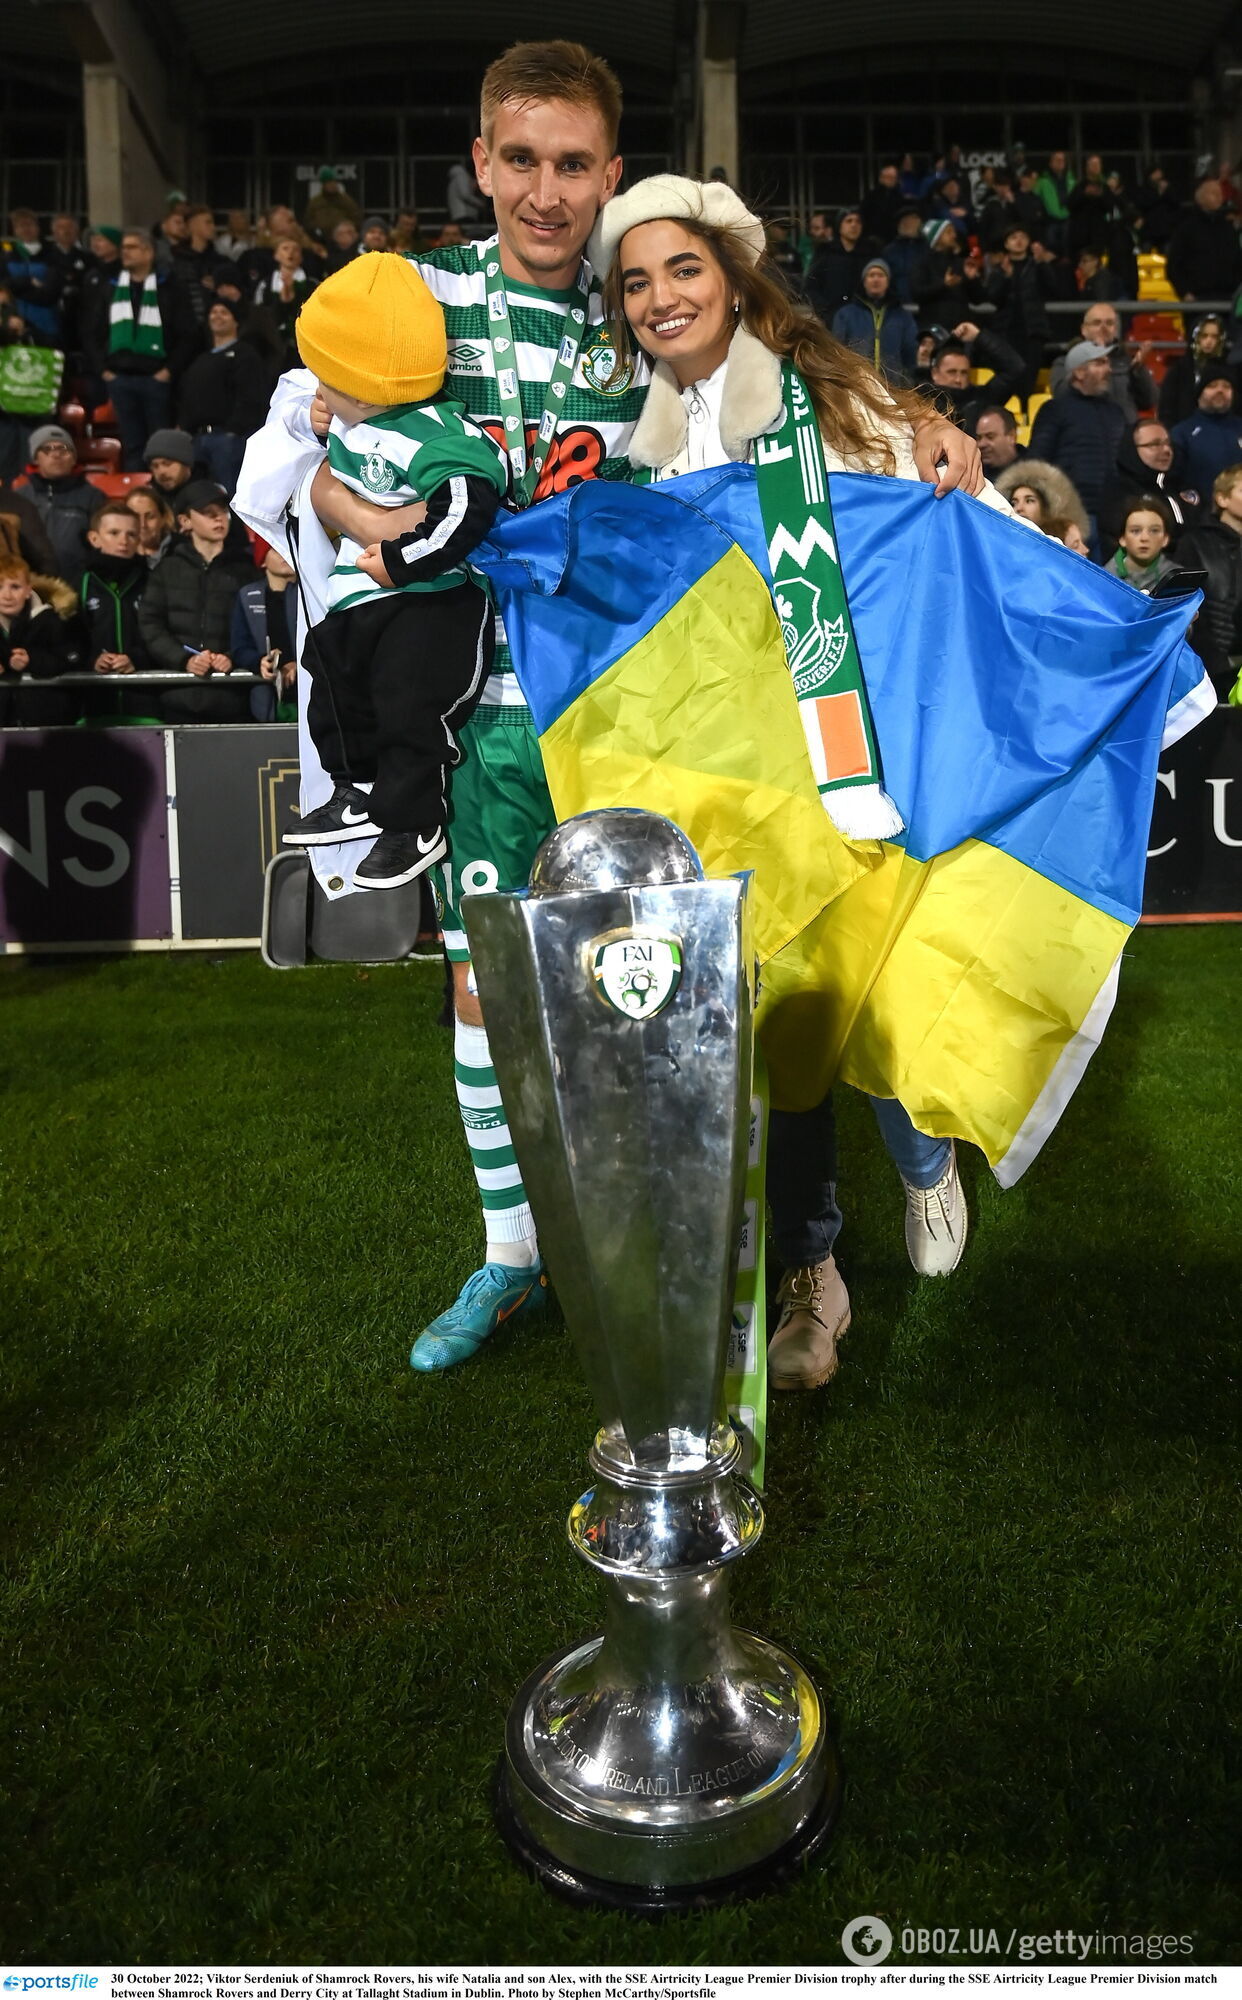 Футболисты чемпиона Ирландии потребовали отказаться от русского языка, так как "это путинский язык"